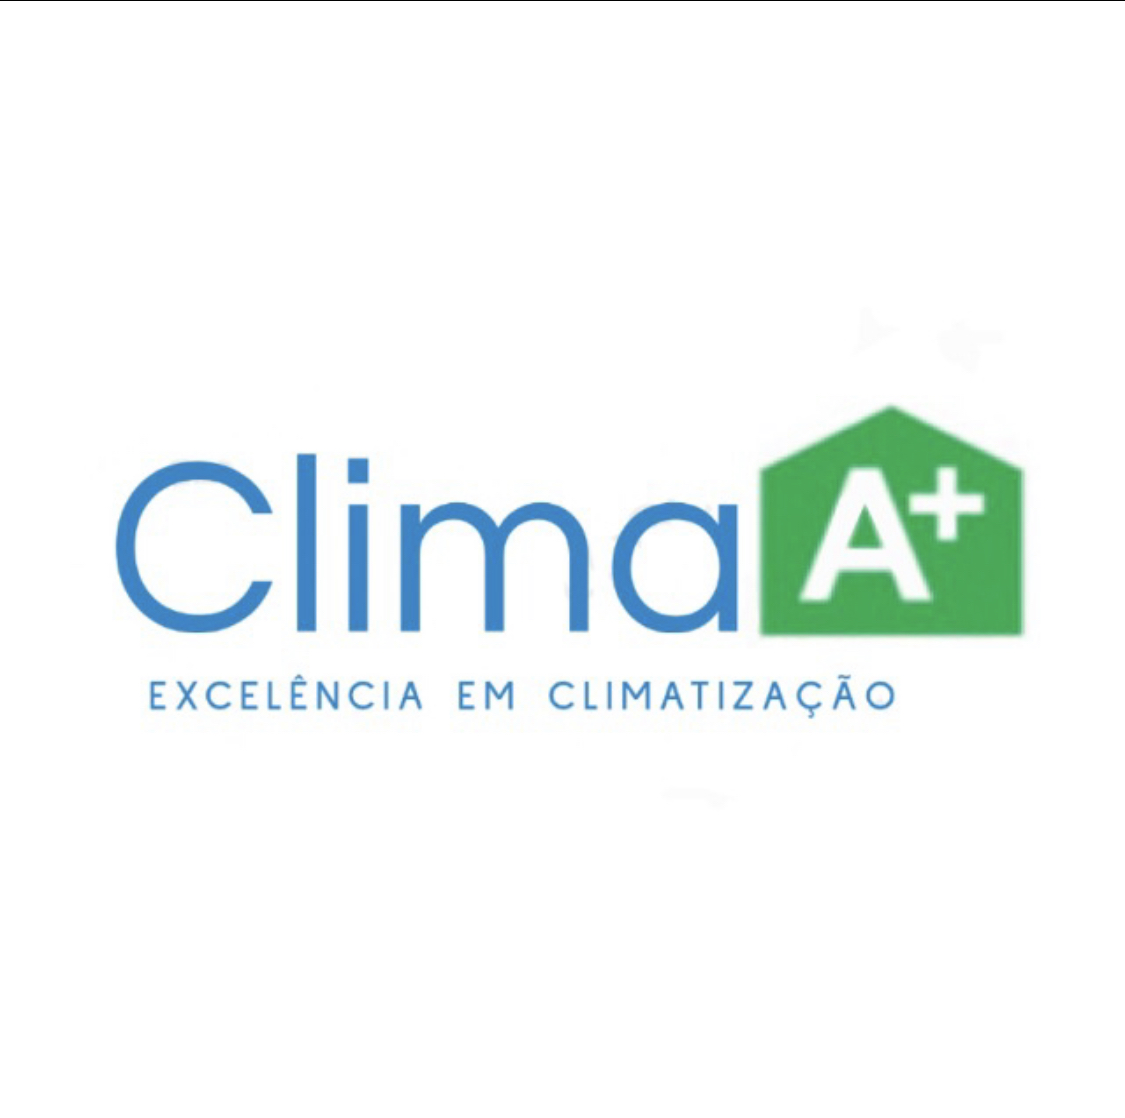 Clima A+ | Excelência em Climatização - Matosinhos - Reparação de Ar Condicionado